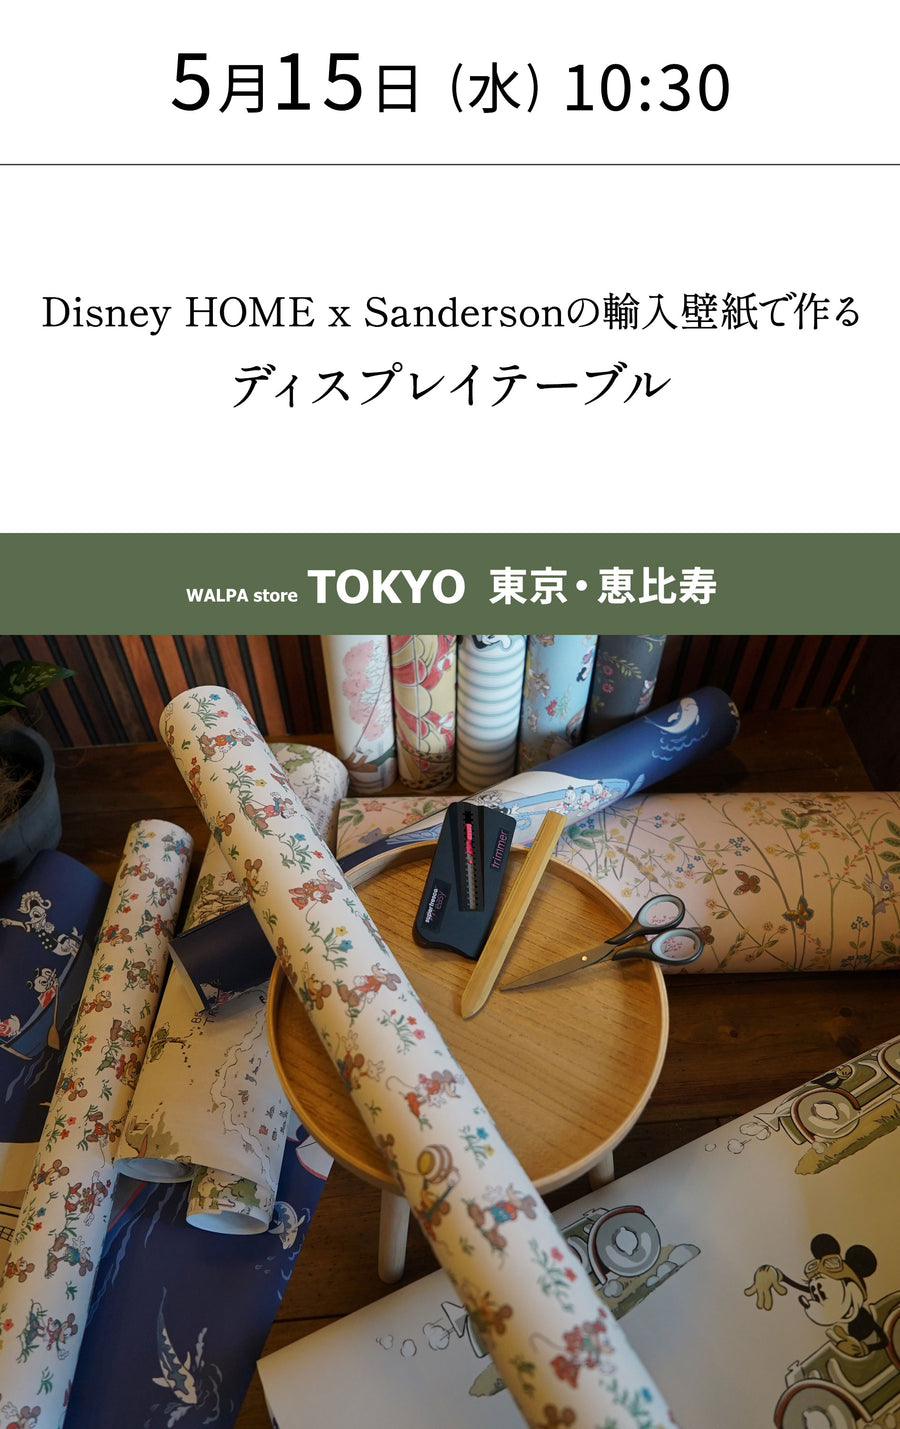 5月15日(水) 10:30～WALPA STORE 東京 ワークショップ 「Disney HOME x Sandersonの輸入壁紙で作るディスプレイテーブル」